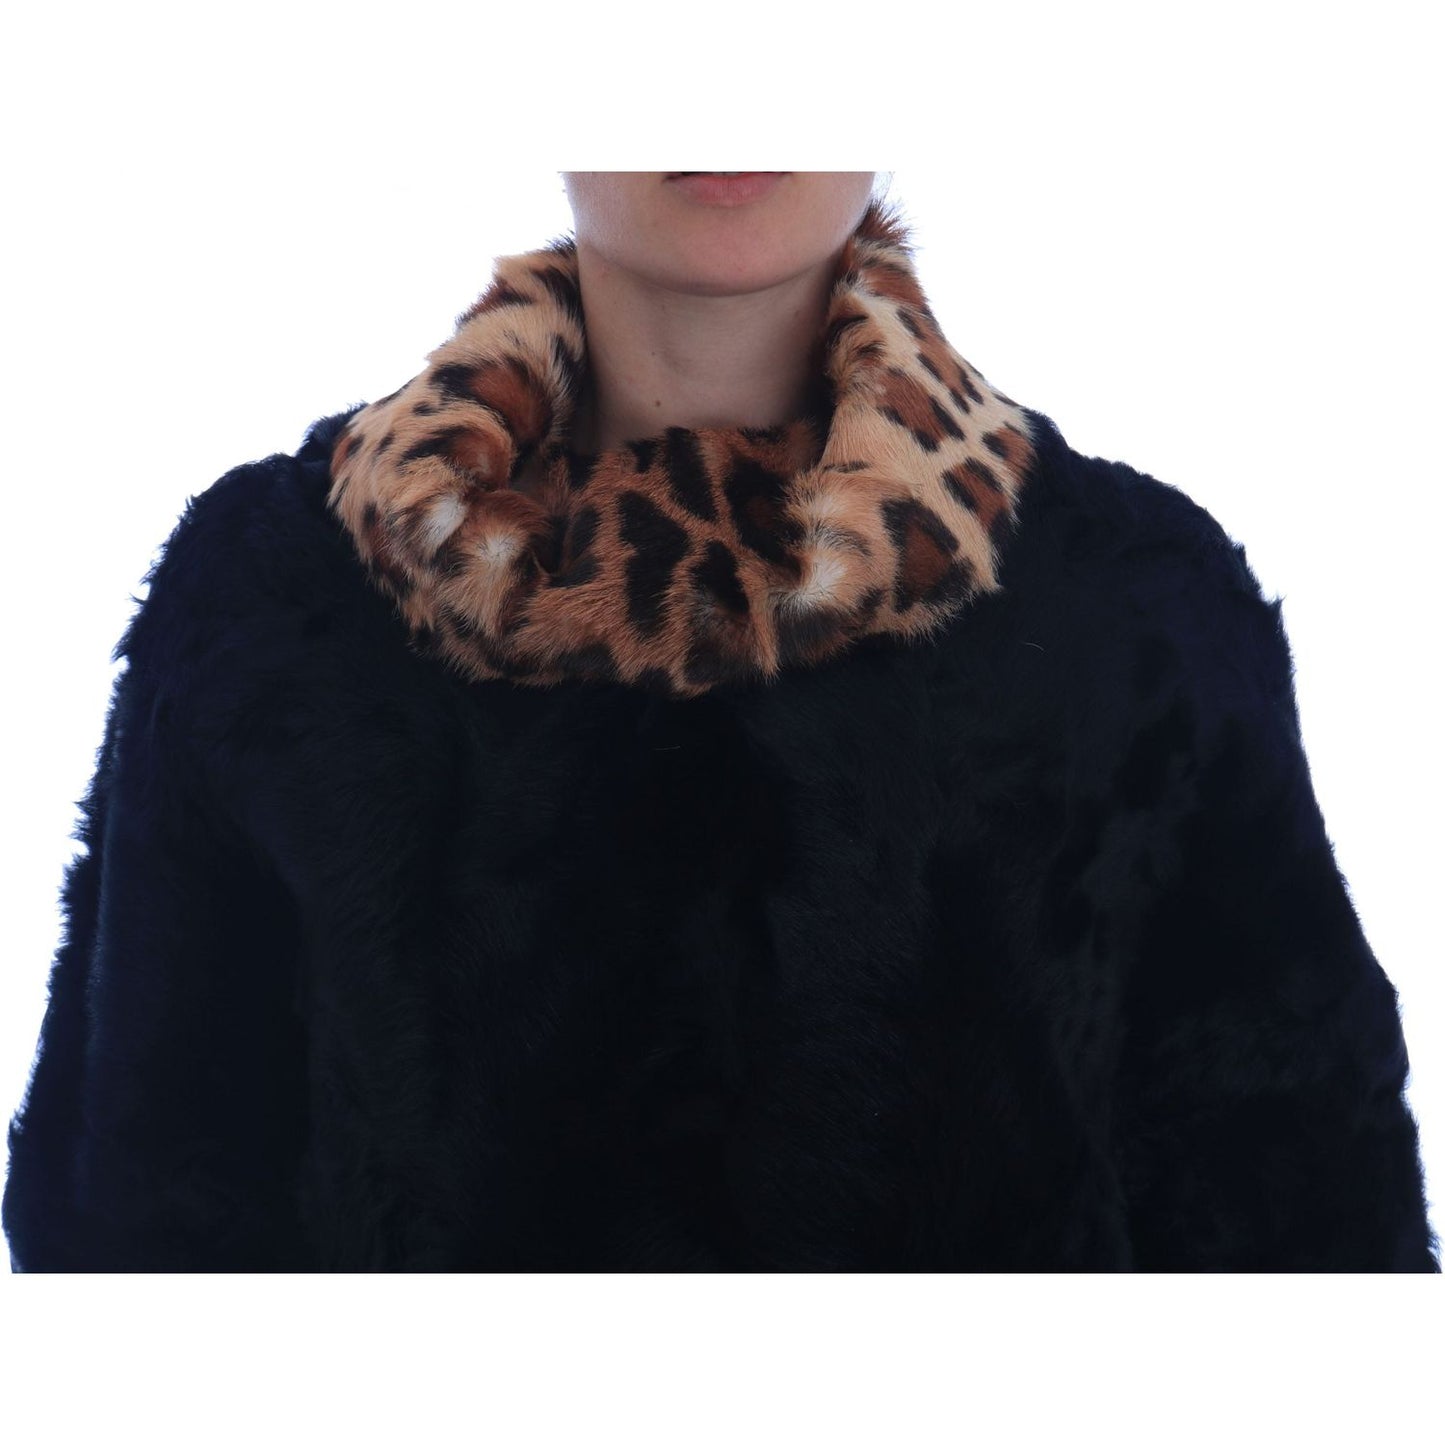 Dolce & Gabbana Elegant Black Lamb Fur Short Coat black-lamb-leopard-print-fur-coat-jacket 654682-black-lamb-leopard-print-fur-coat-jacket-4.jpg